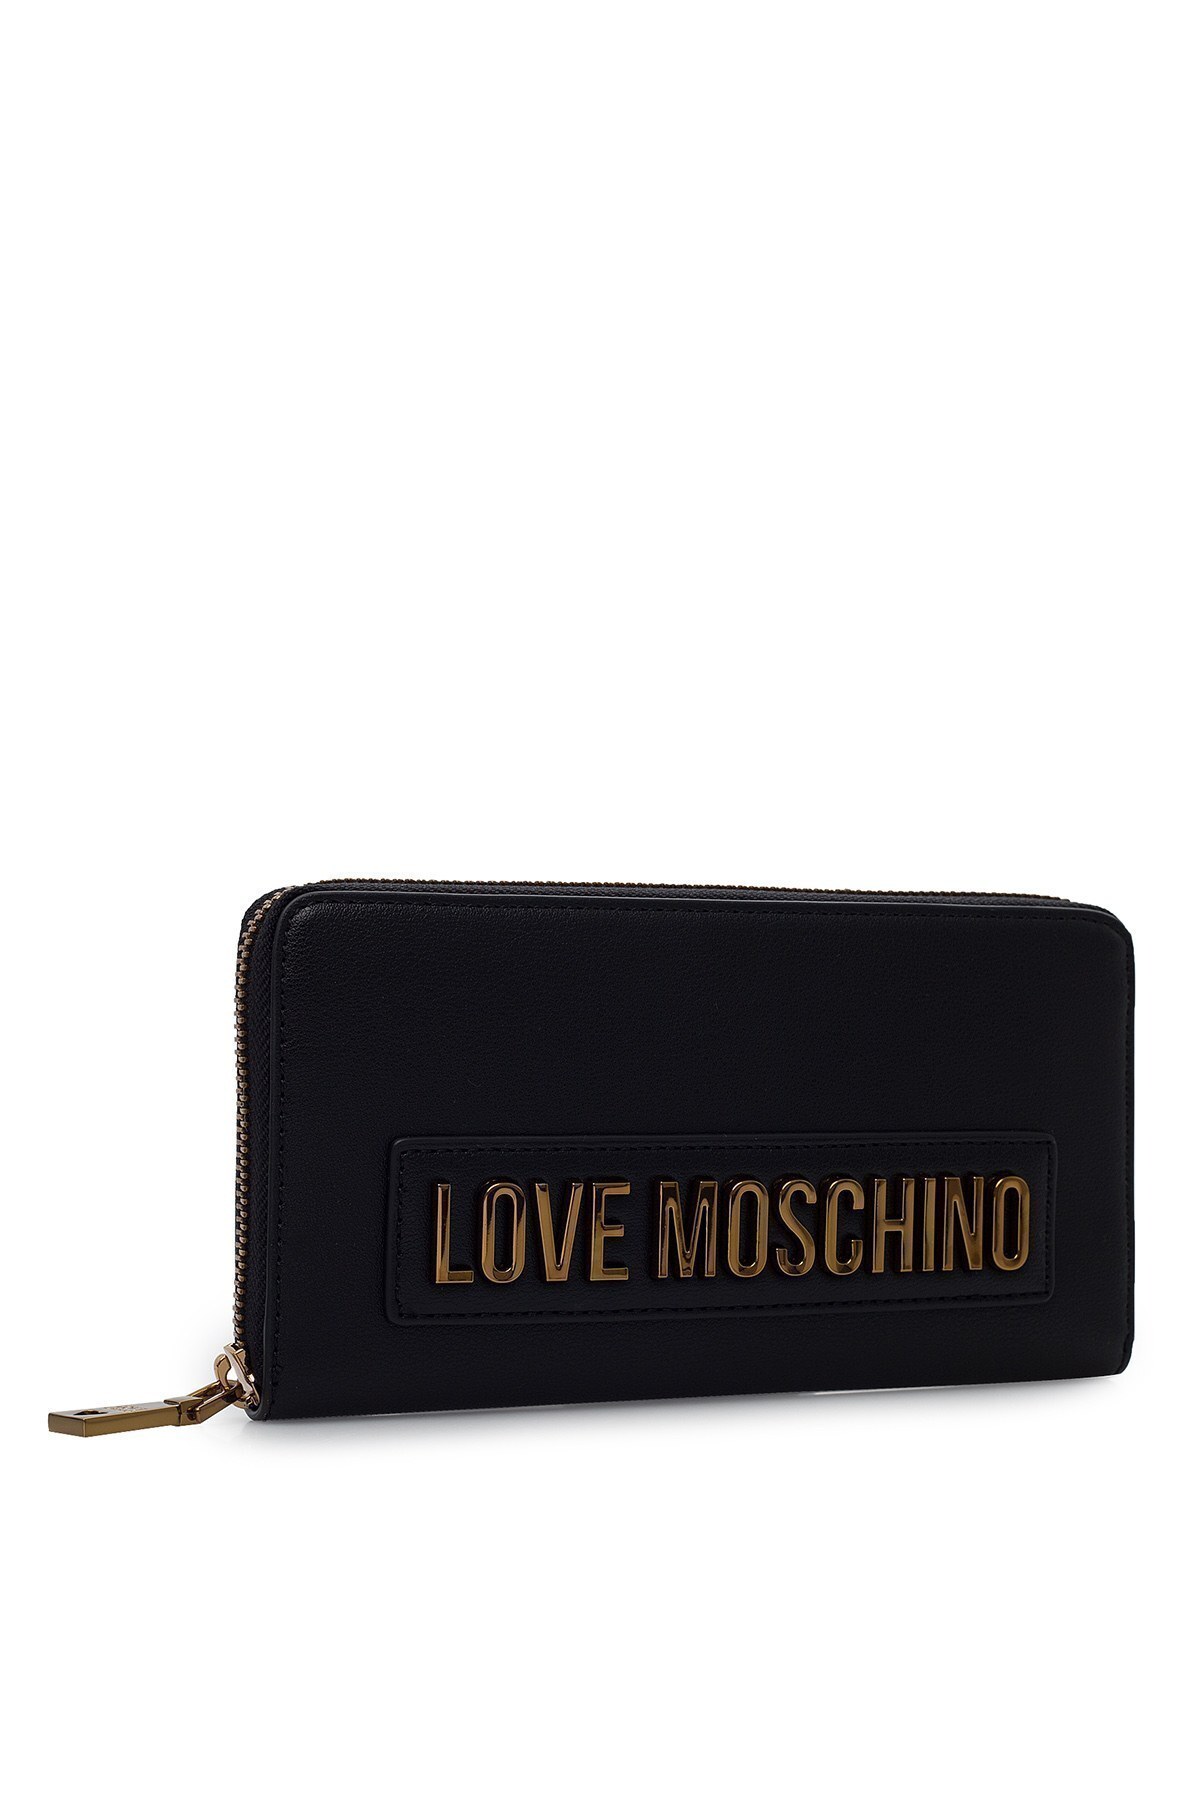 Love Moschino Logo Baskılı Fermuarlı Kadın Cüzdan JC5622PP1BLK0000 SİYAH